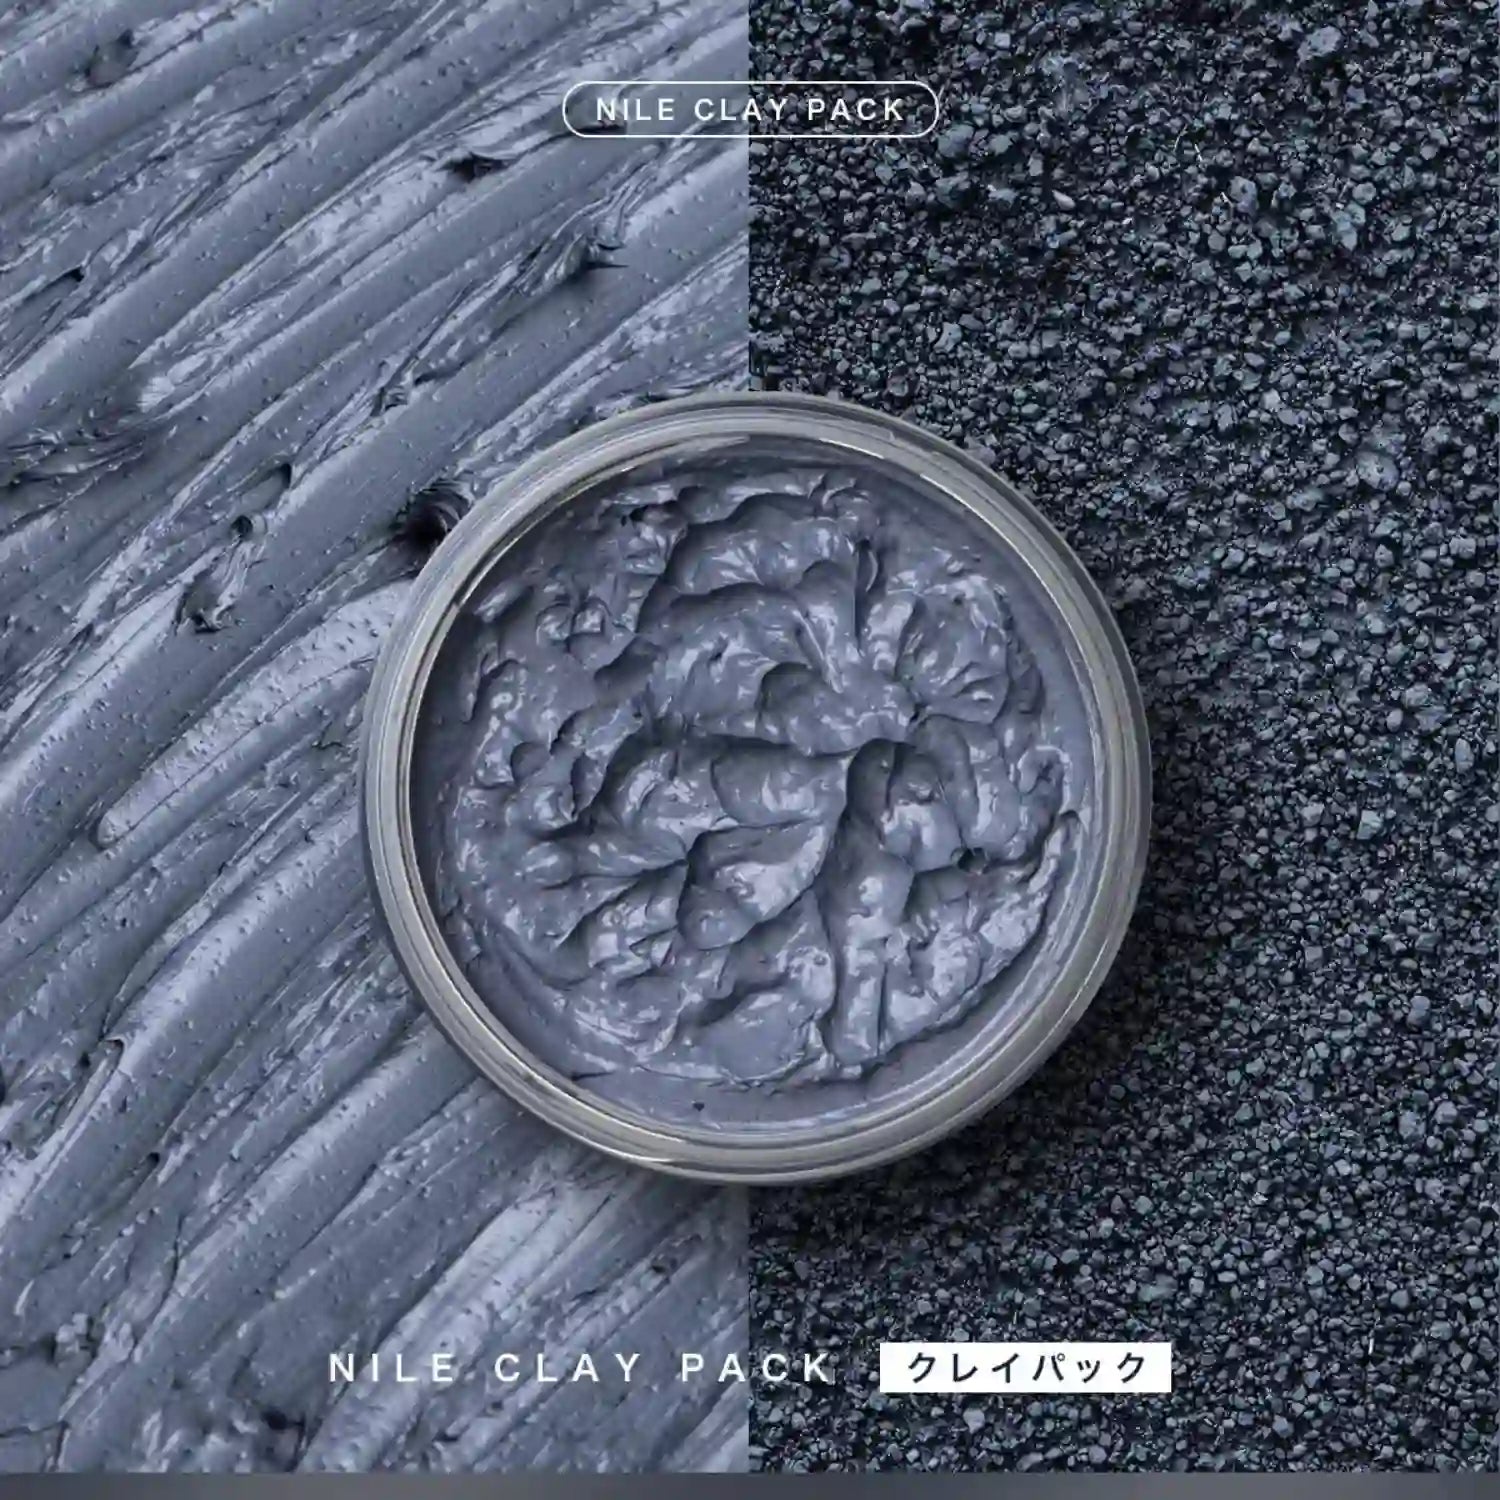 Nile Clay Pack 70g - Buy Me Japan